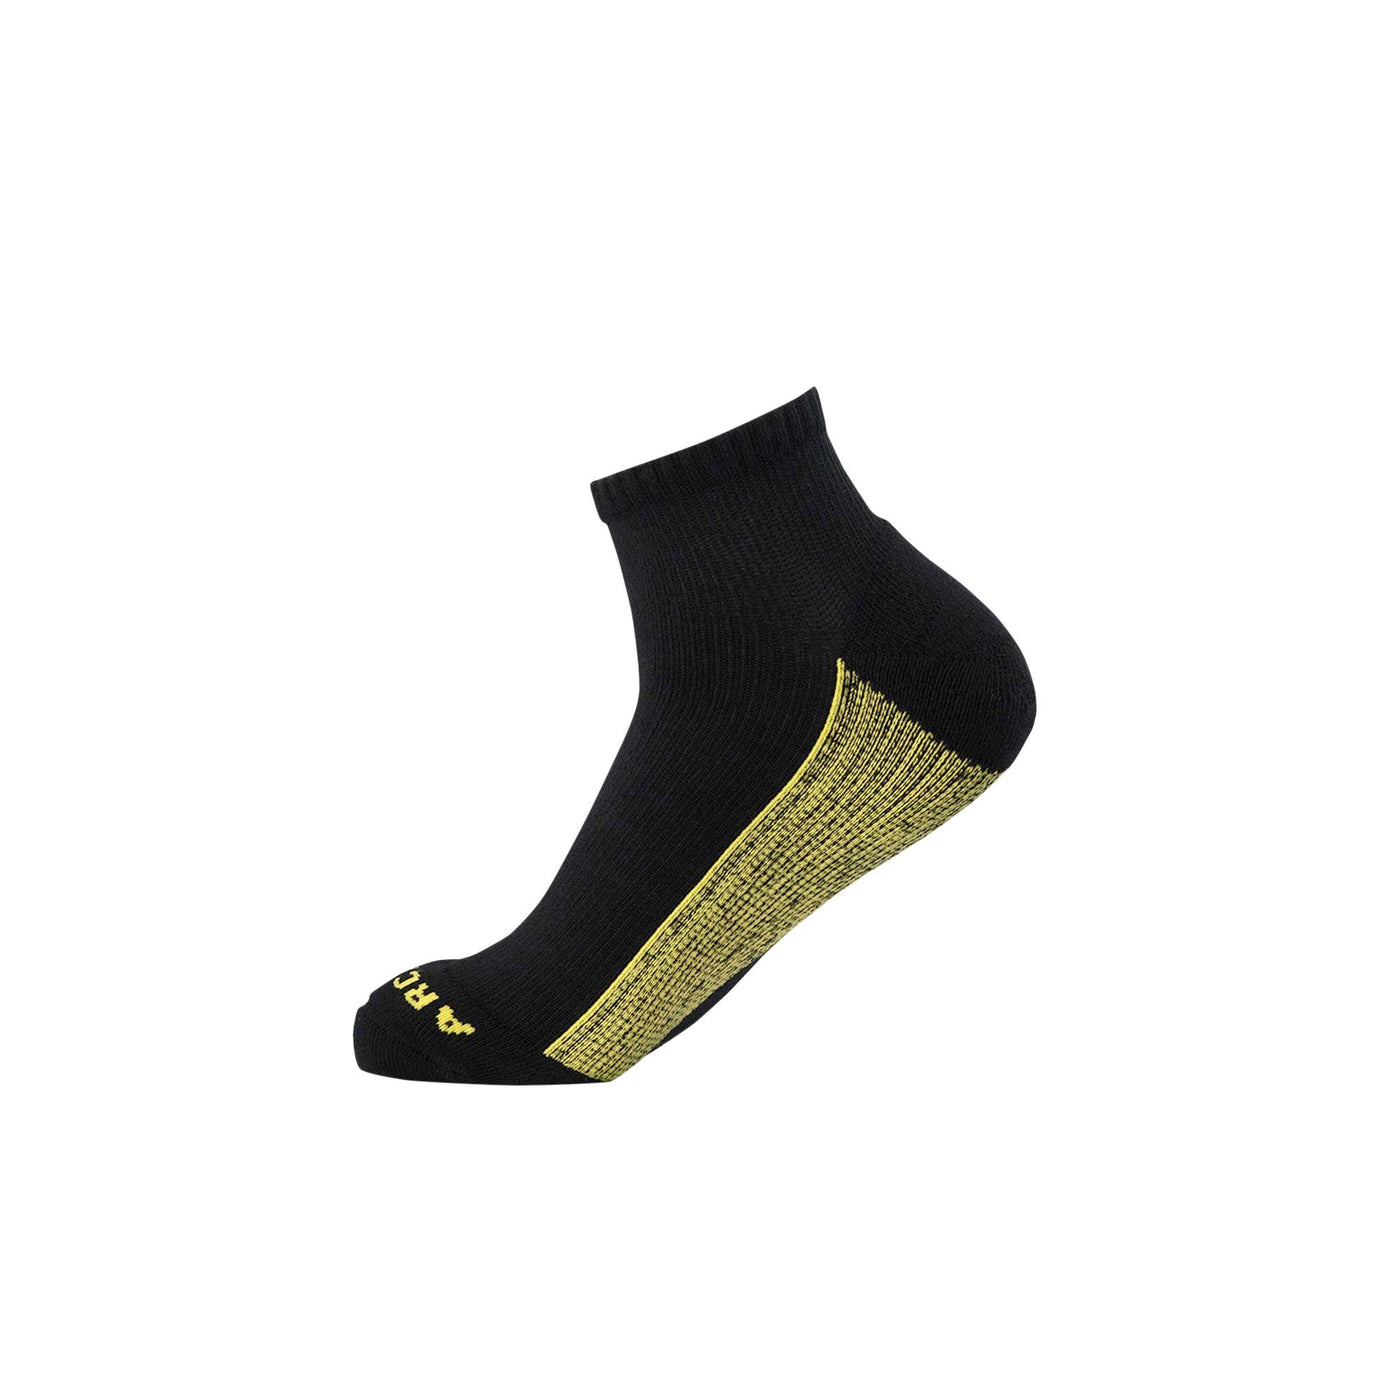 Black Athletic Quarter Sock athletic socks ArchTek